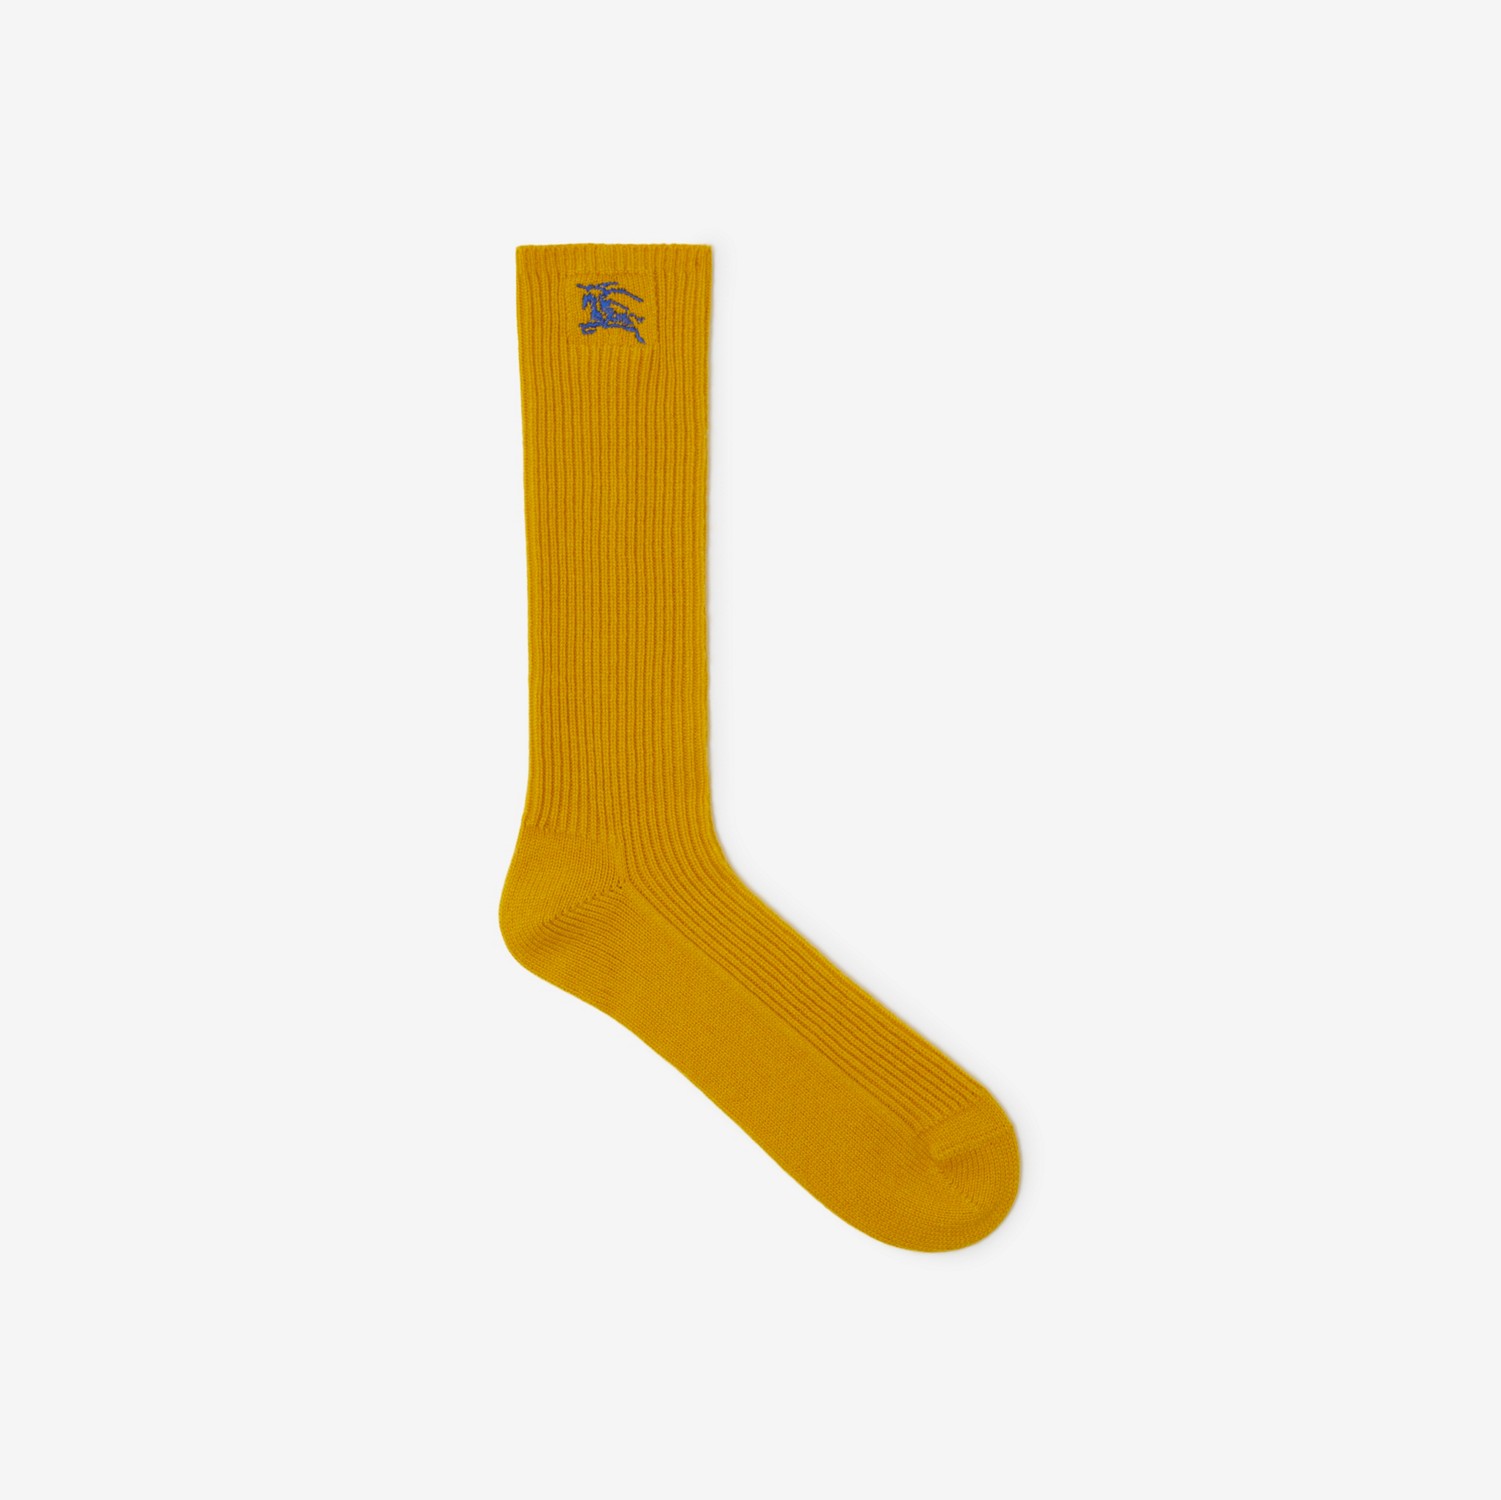 Ribbed Cashmere Blend Socks